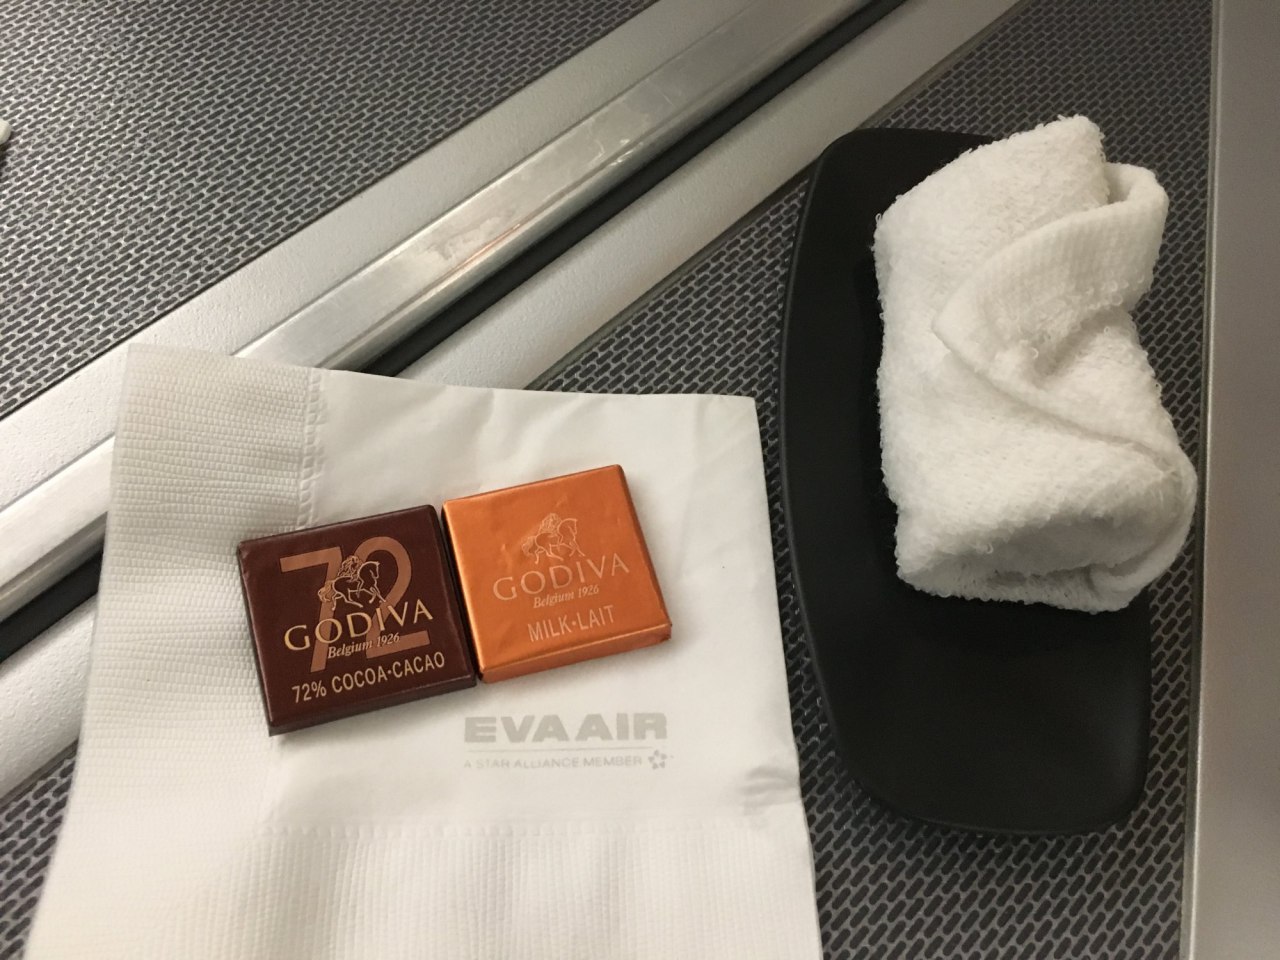 Review-EVA Business Class-Godiva Chocolates